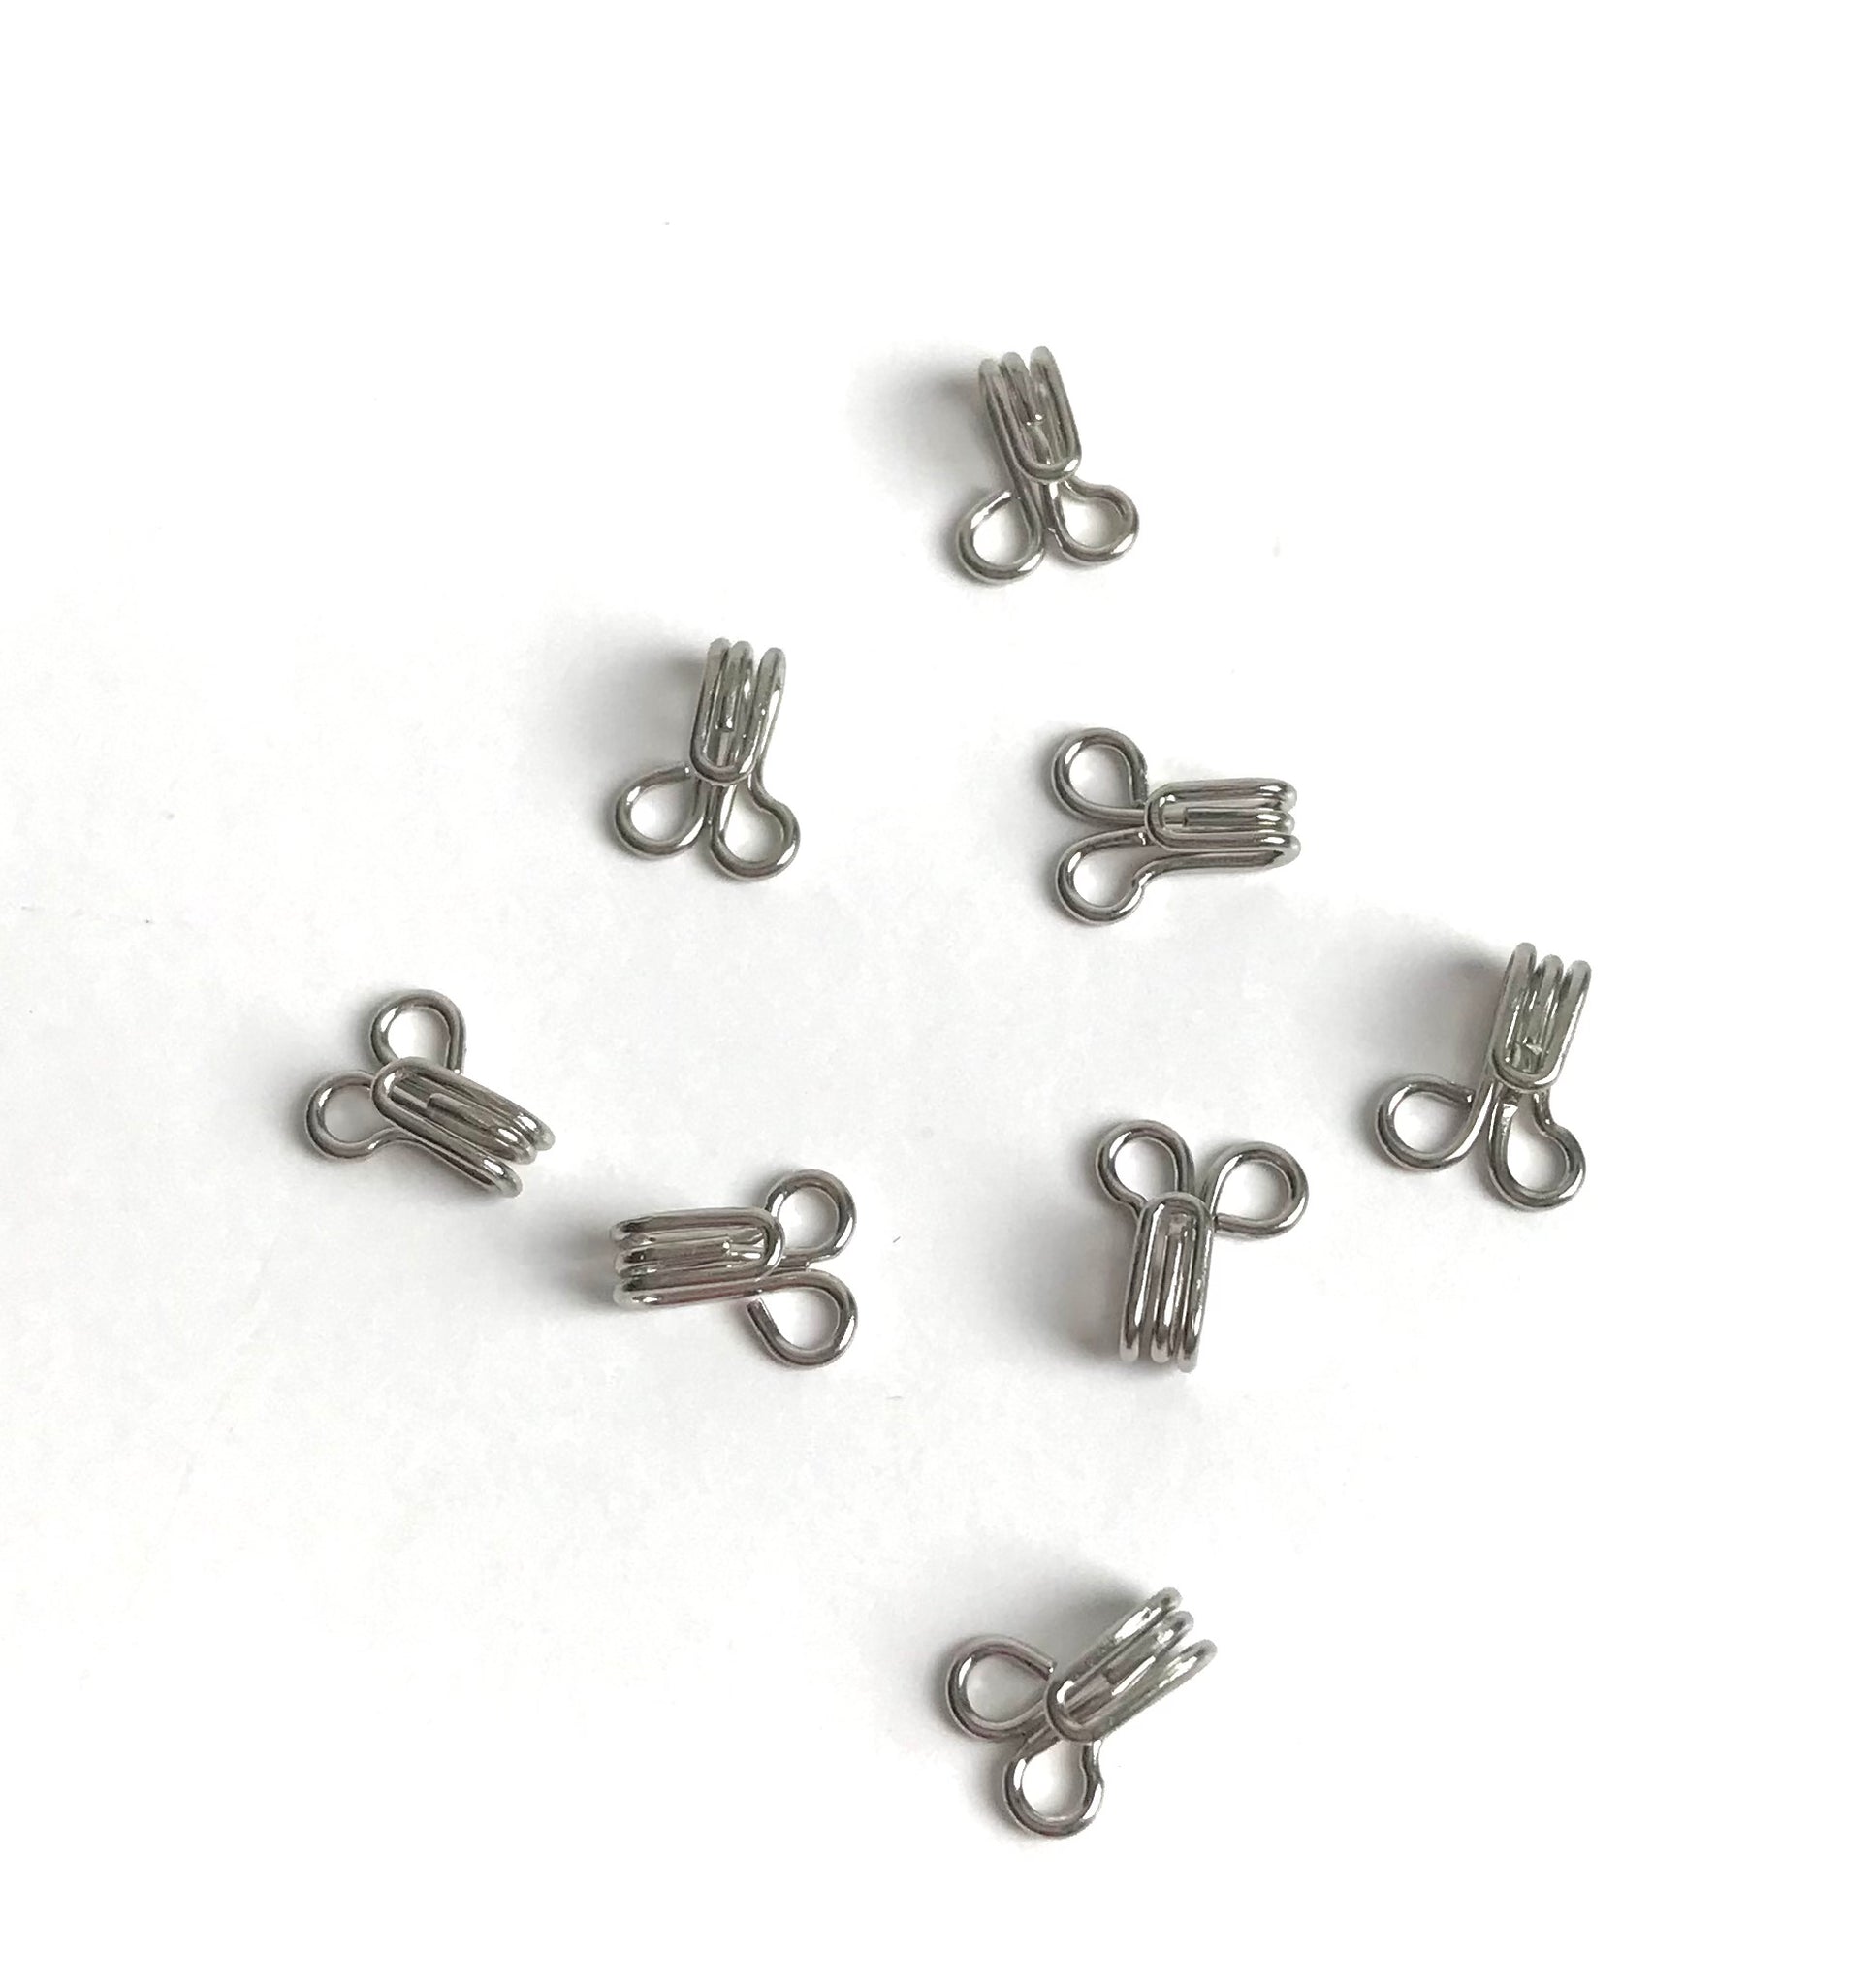 100 sets of steel silver -Hook eye bra closure - Sewing Supplies